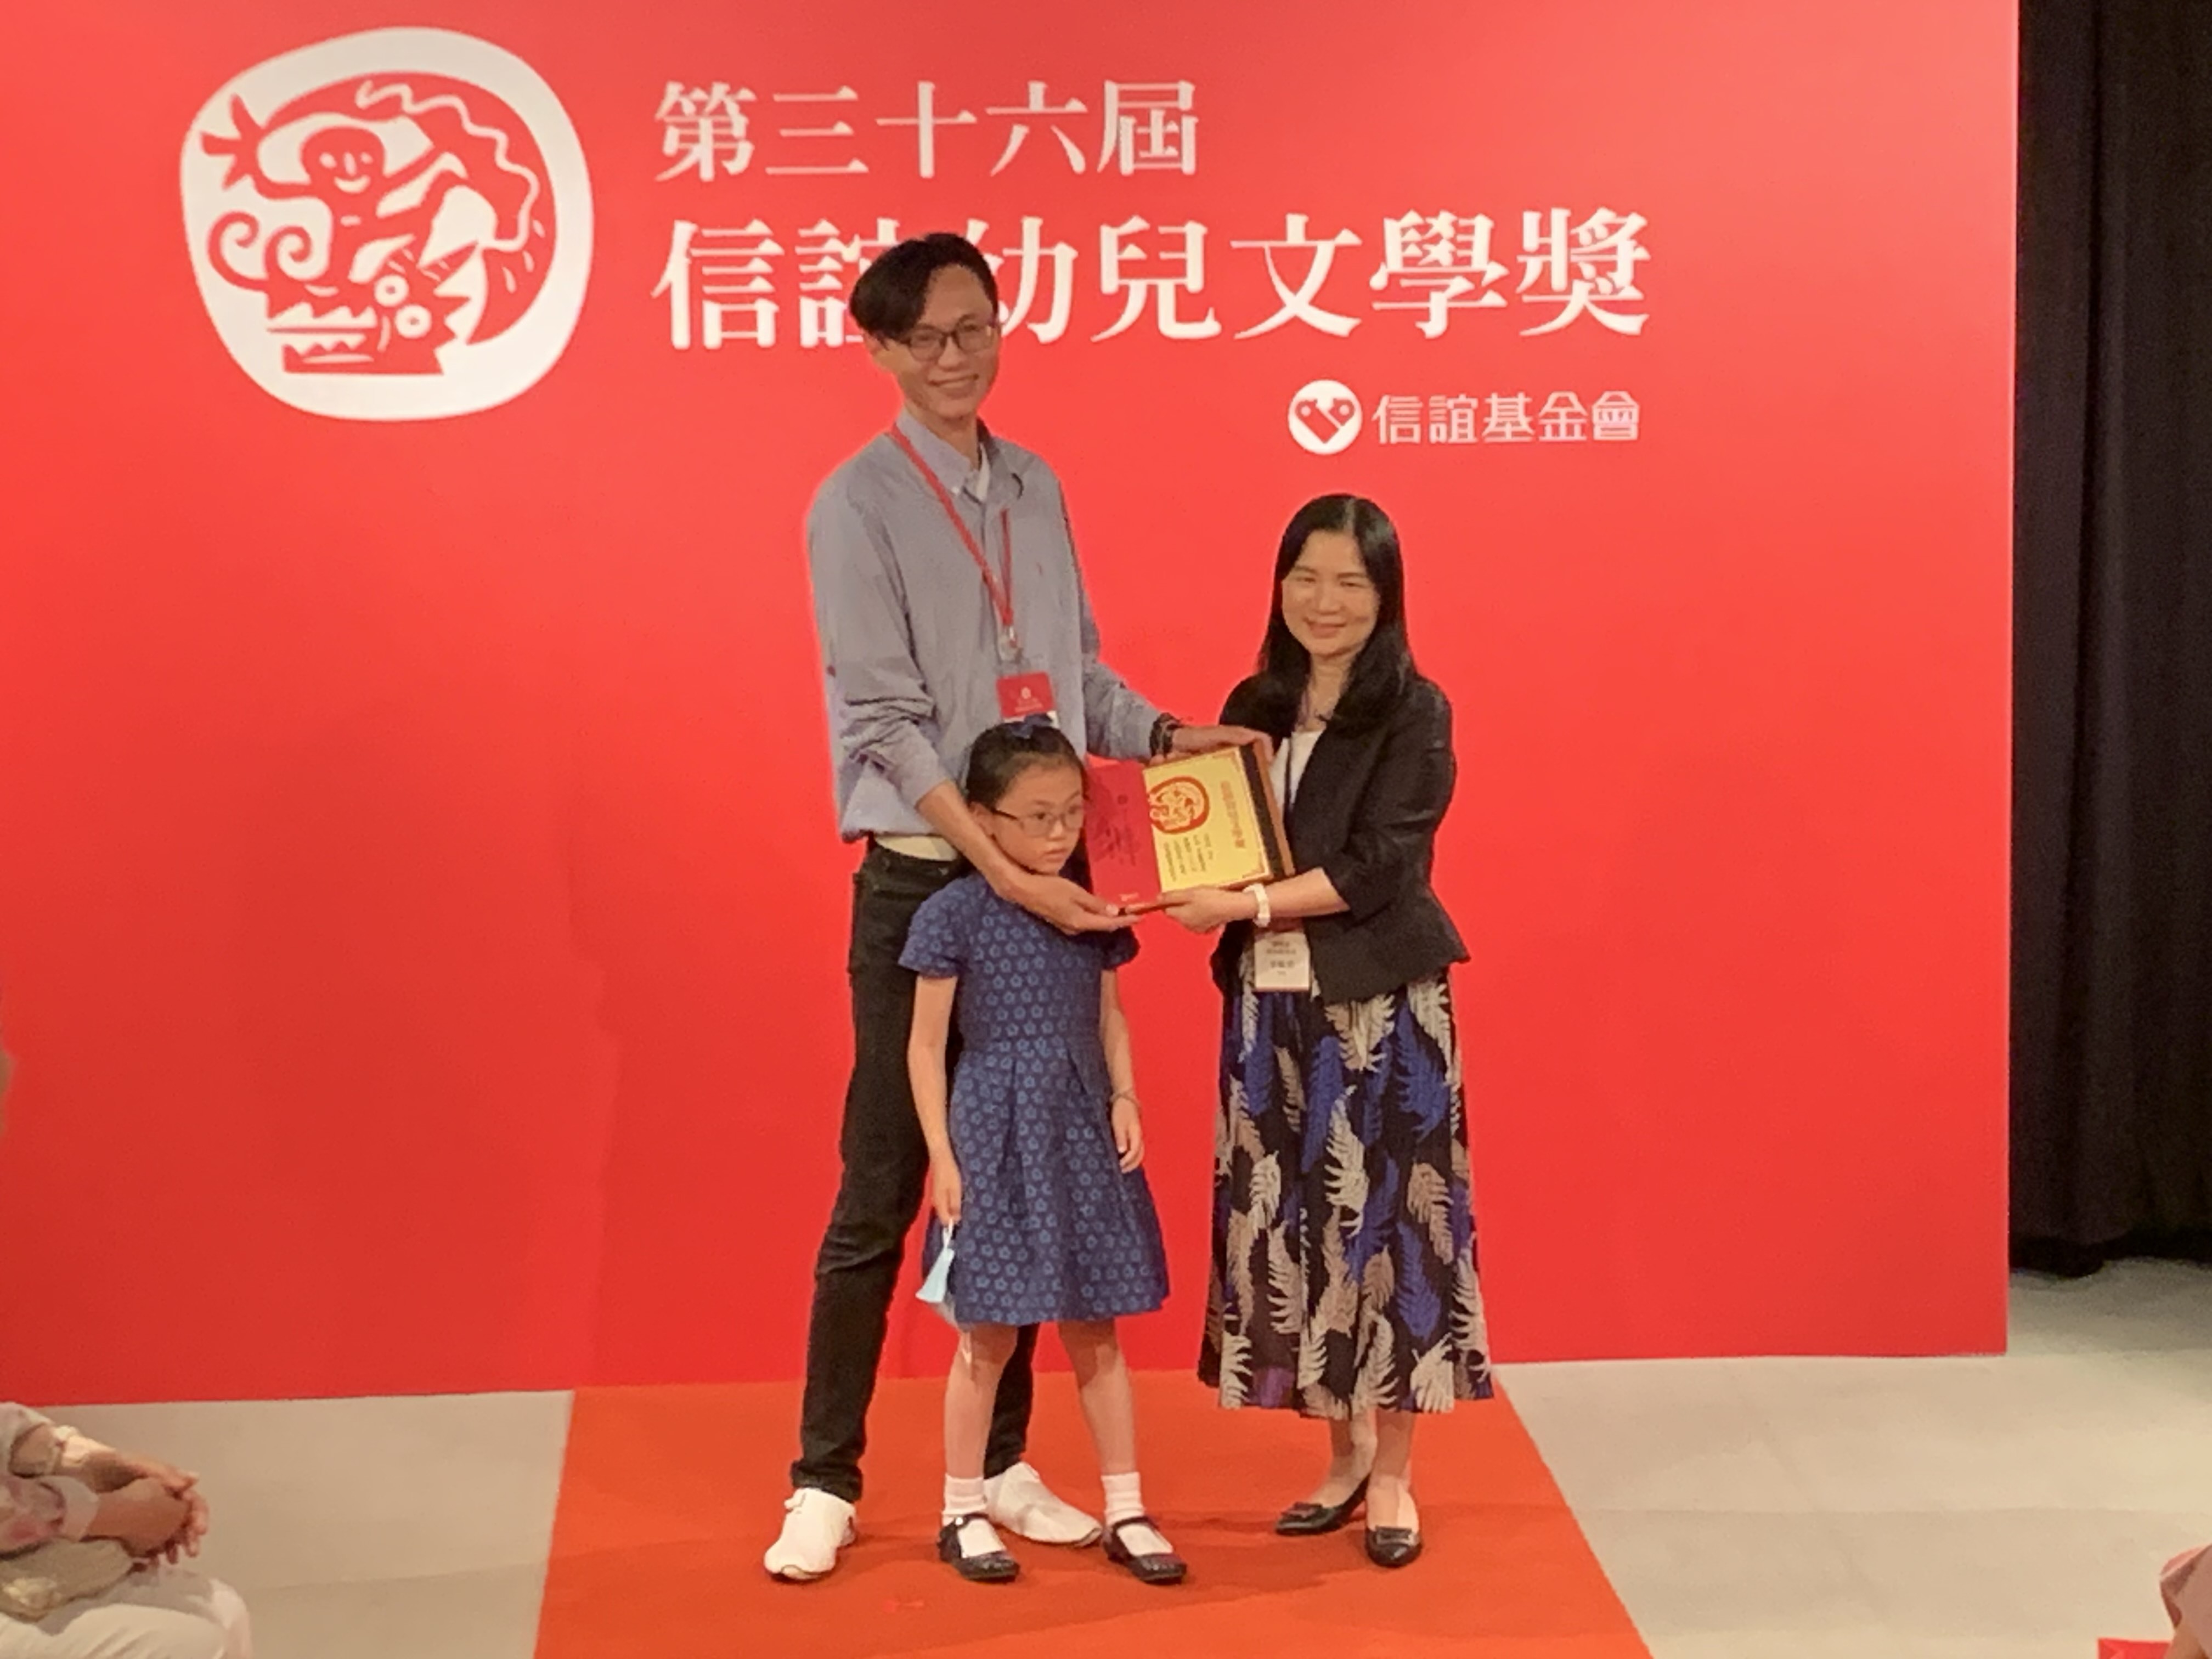 教育部終身教育司李毓娟司長(右)頒發獎項給小學美術老師江明恭